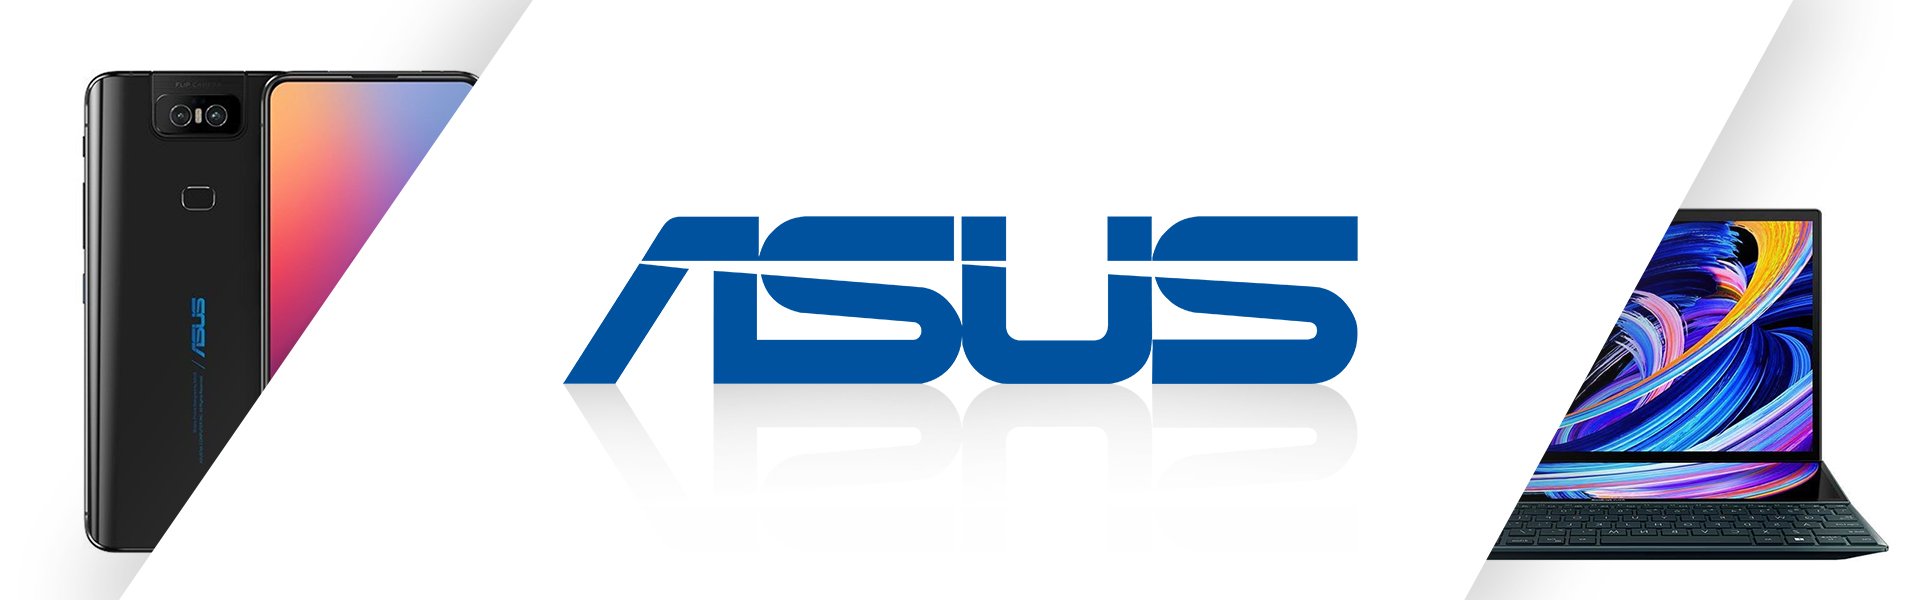 ASUS WS X299 PRO/SE Asus